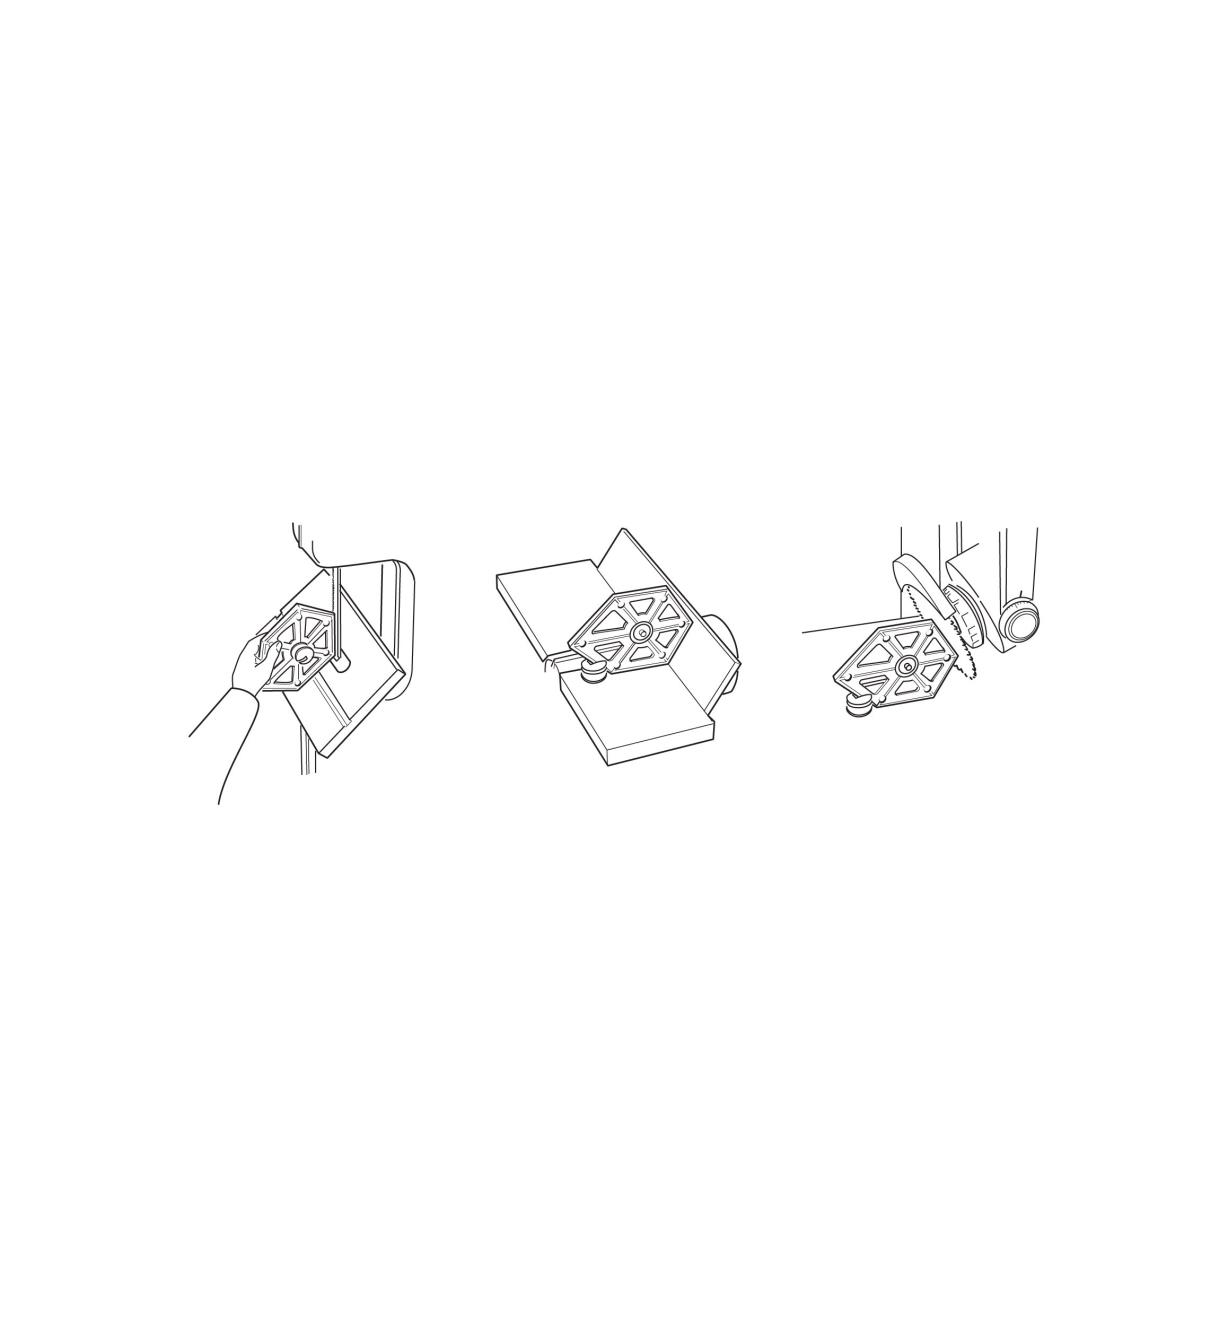 Illustration montrant l'utilisation du gabarit polyvalent pour régler une scie à ruban, une dégauchisseuse et une scie radiale.